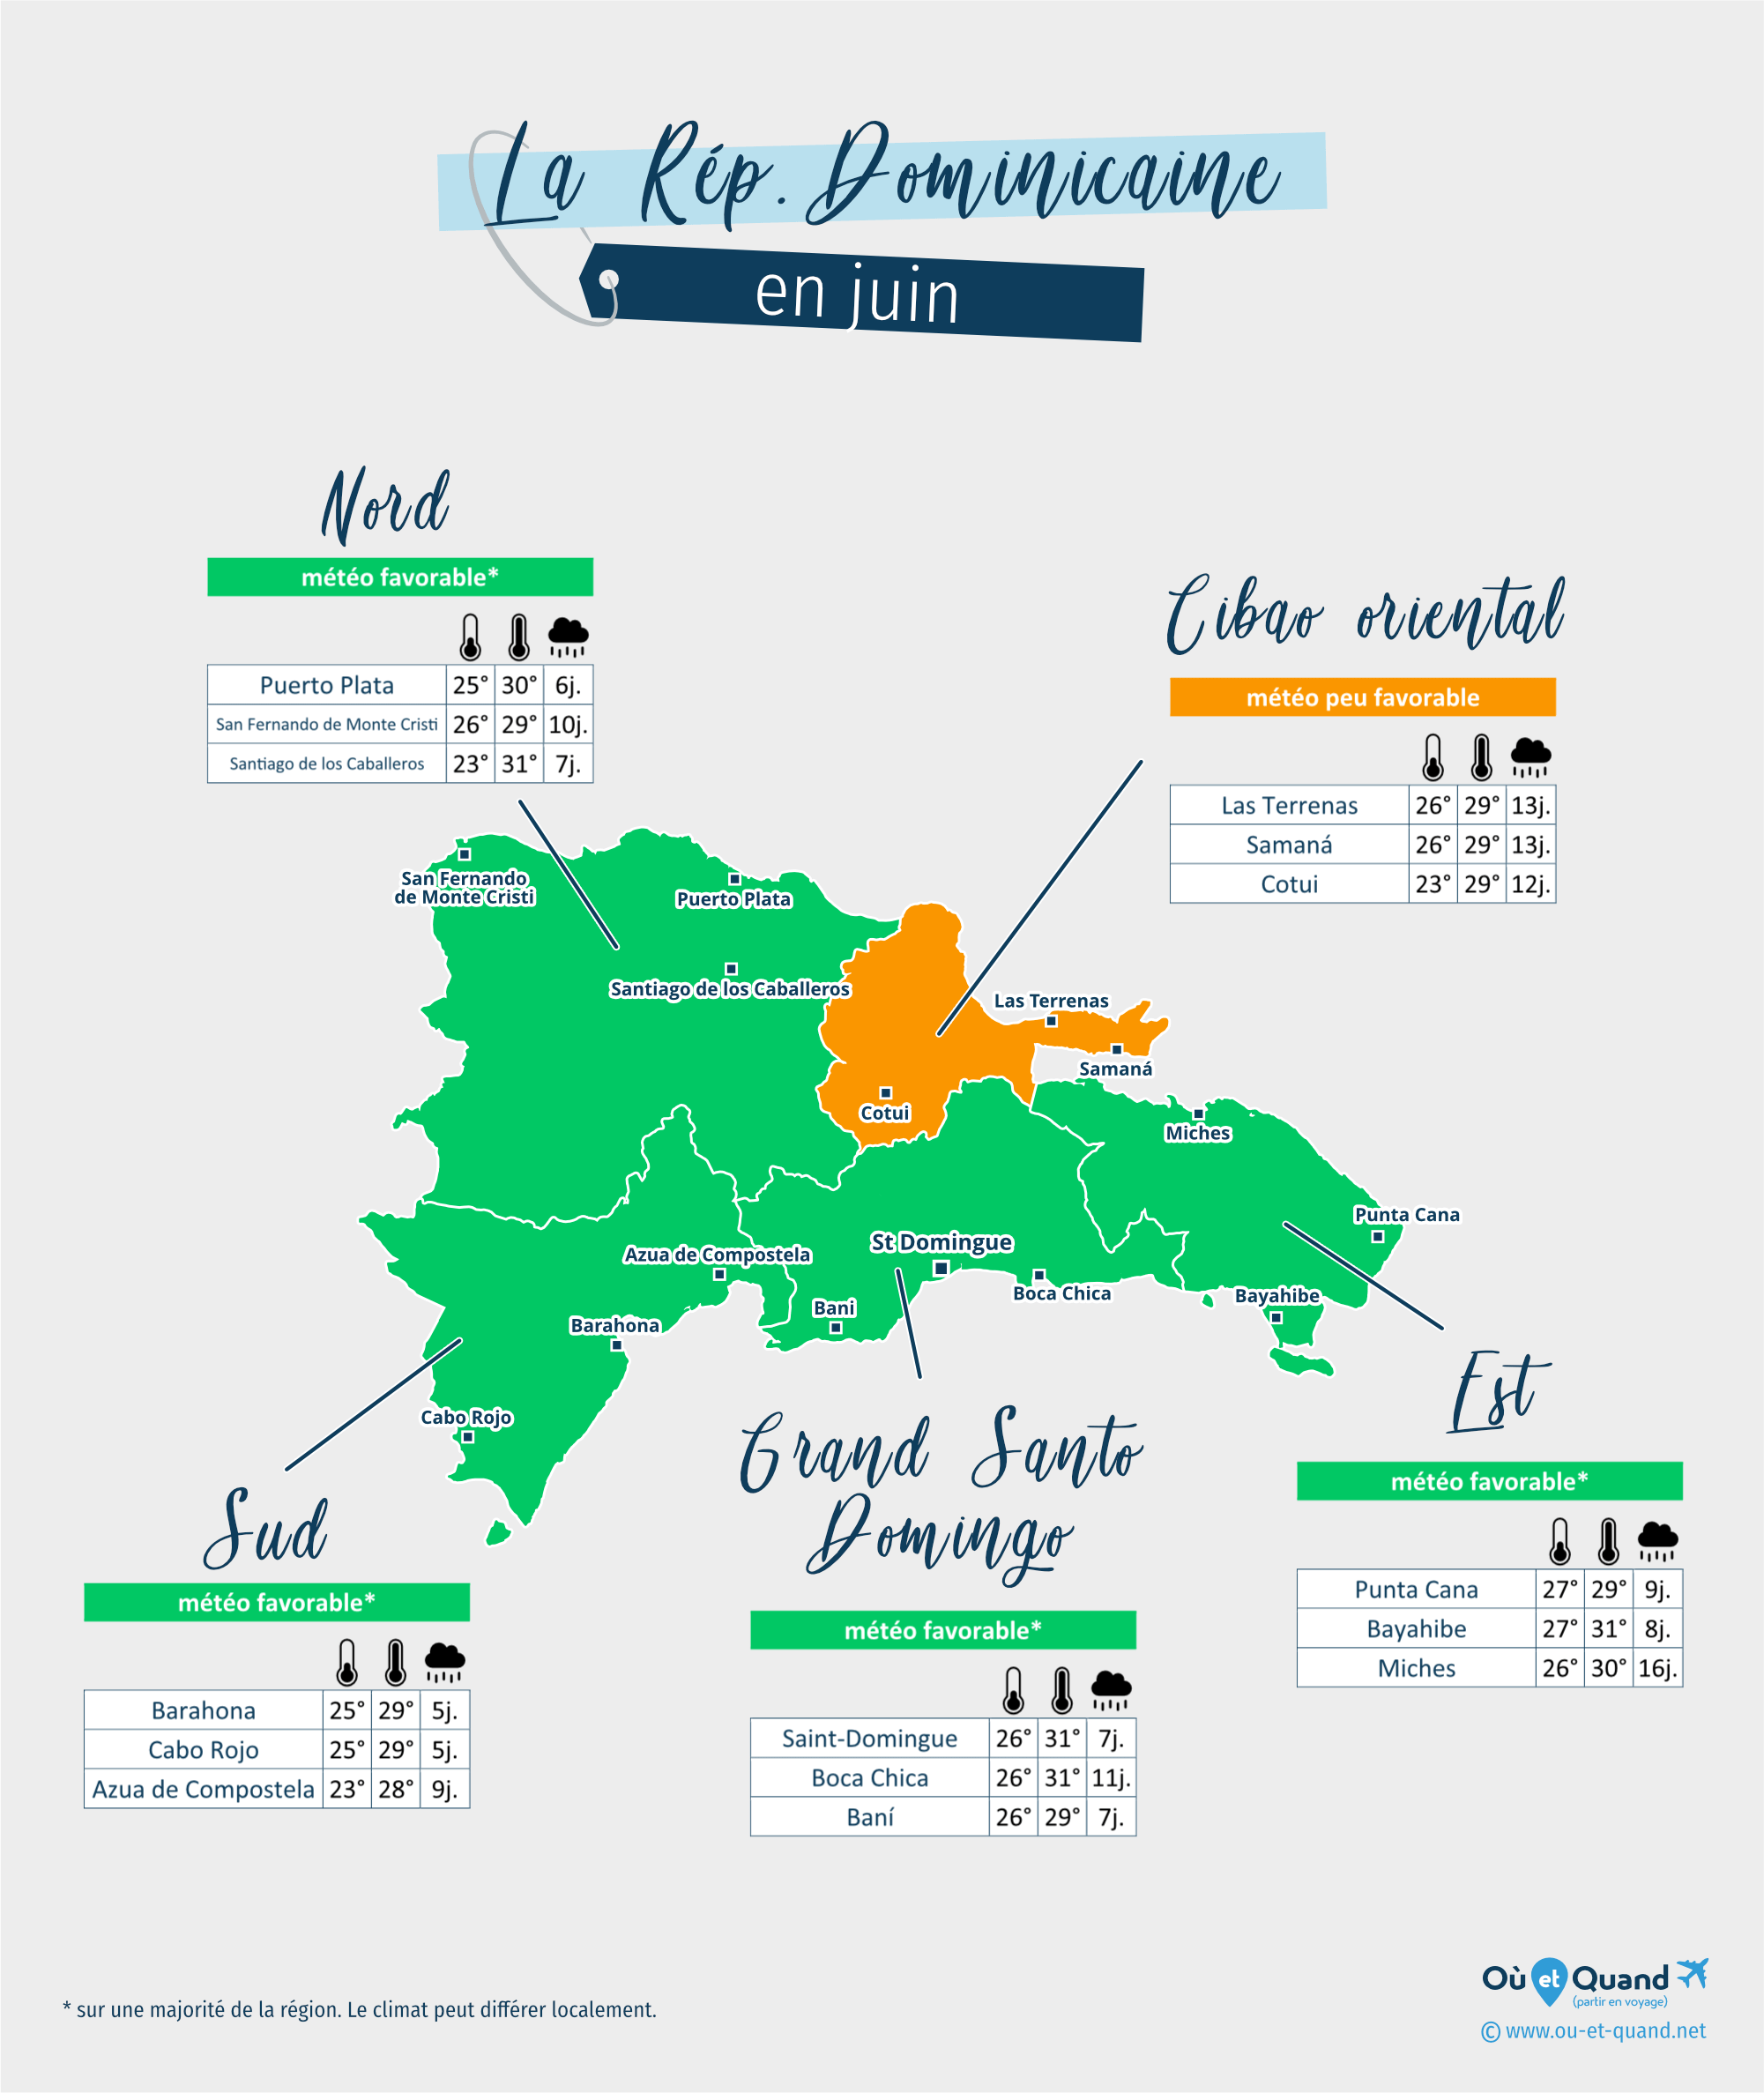 Carte de la météo en juin dans les régions de la République Dominicaine